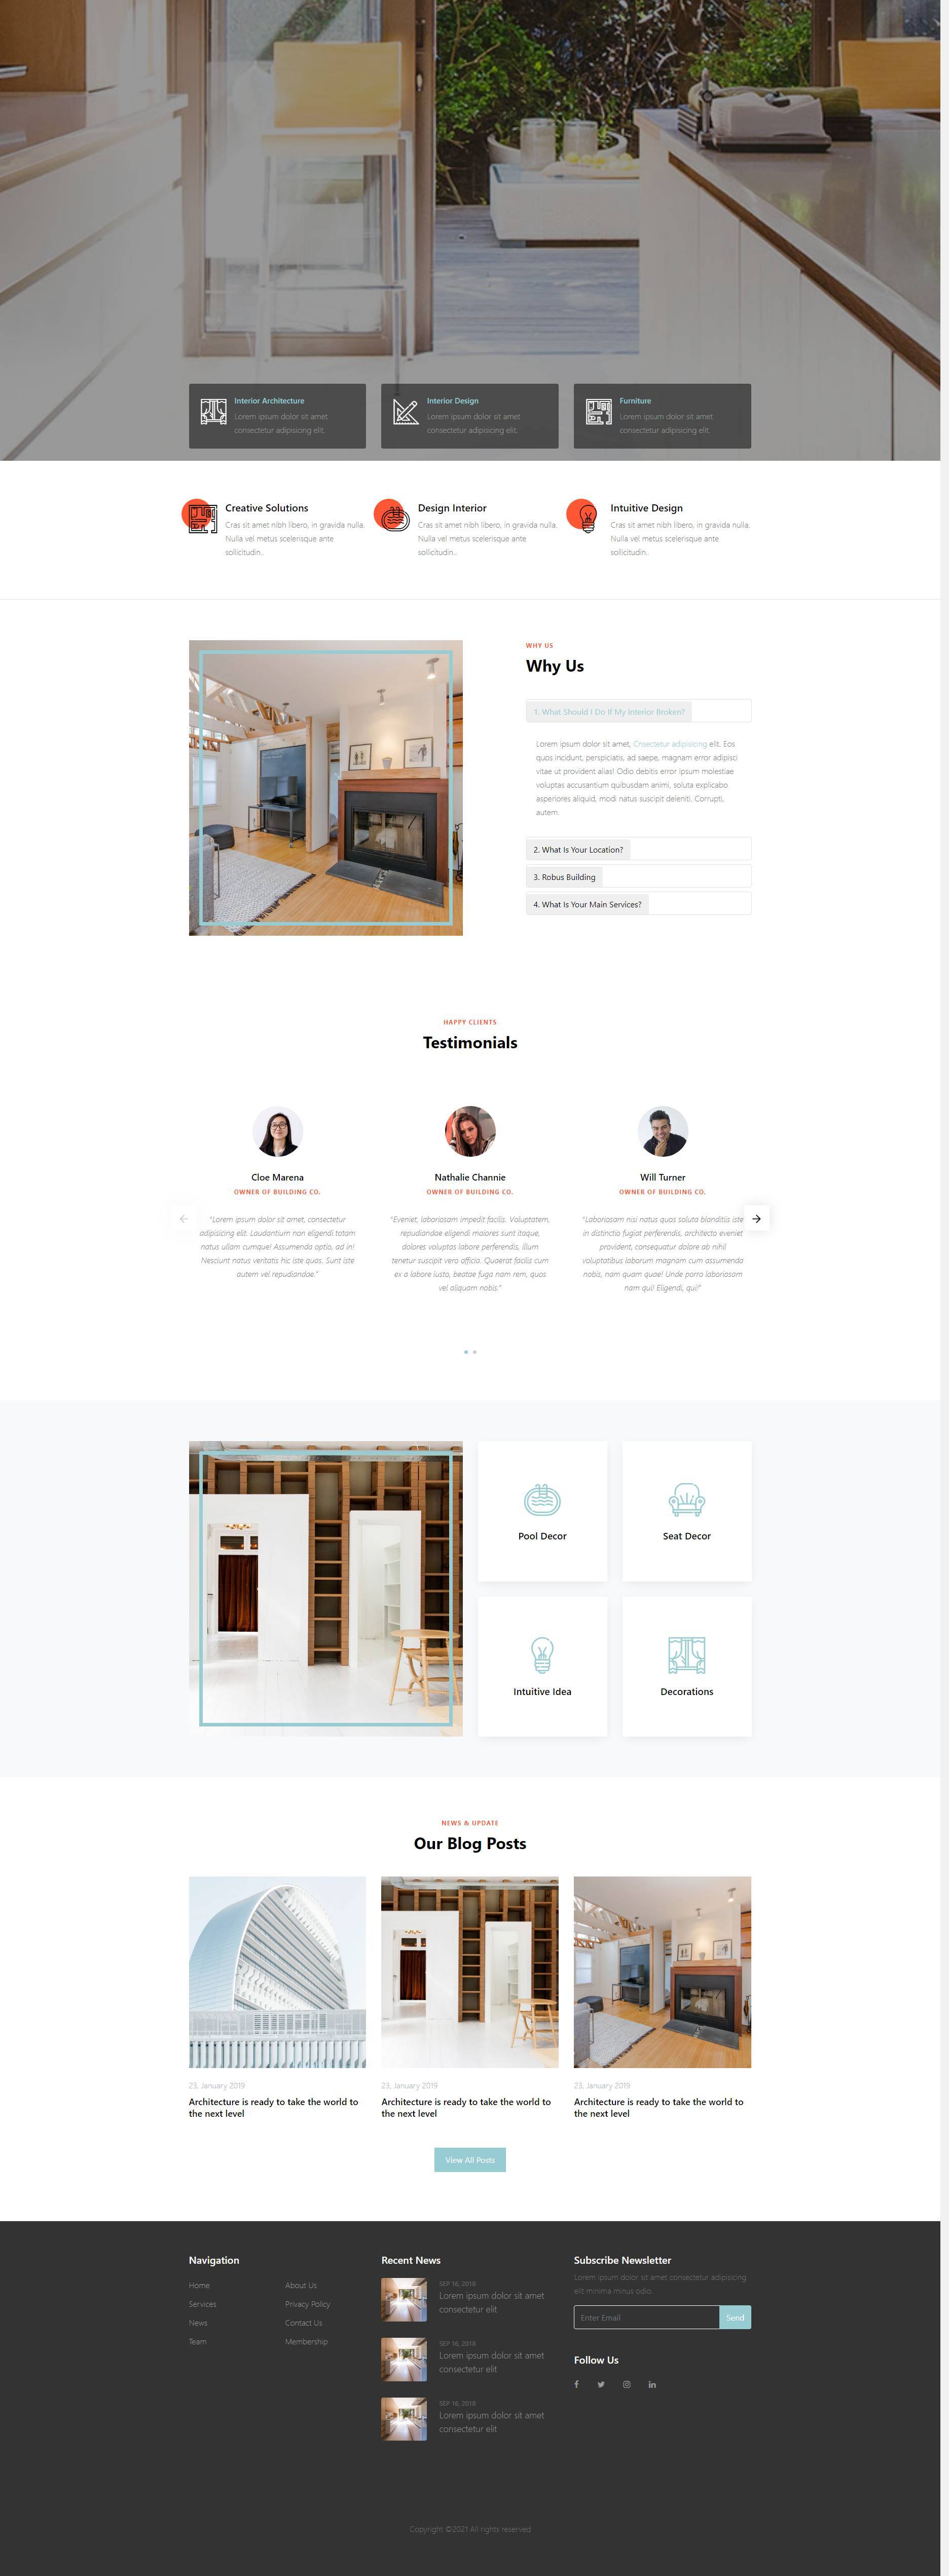 清新简约的室内设计公司企业网站模板